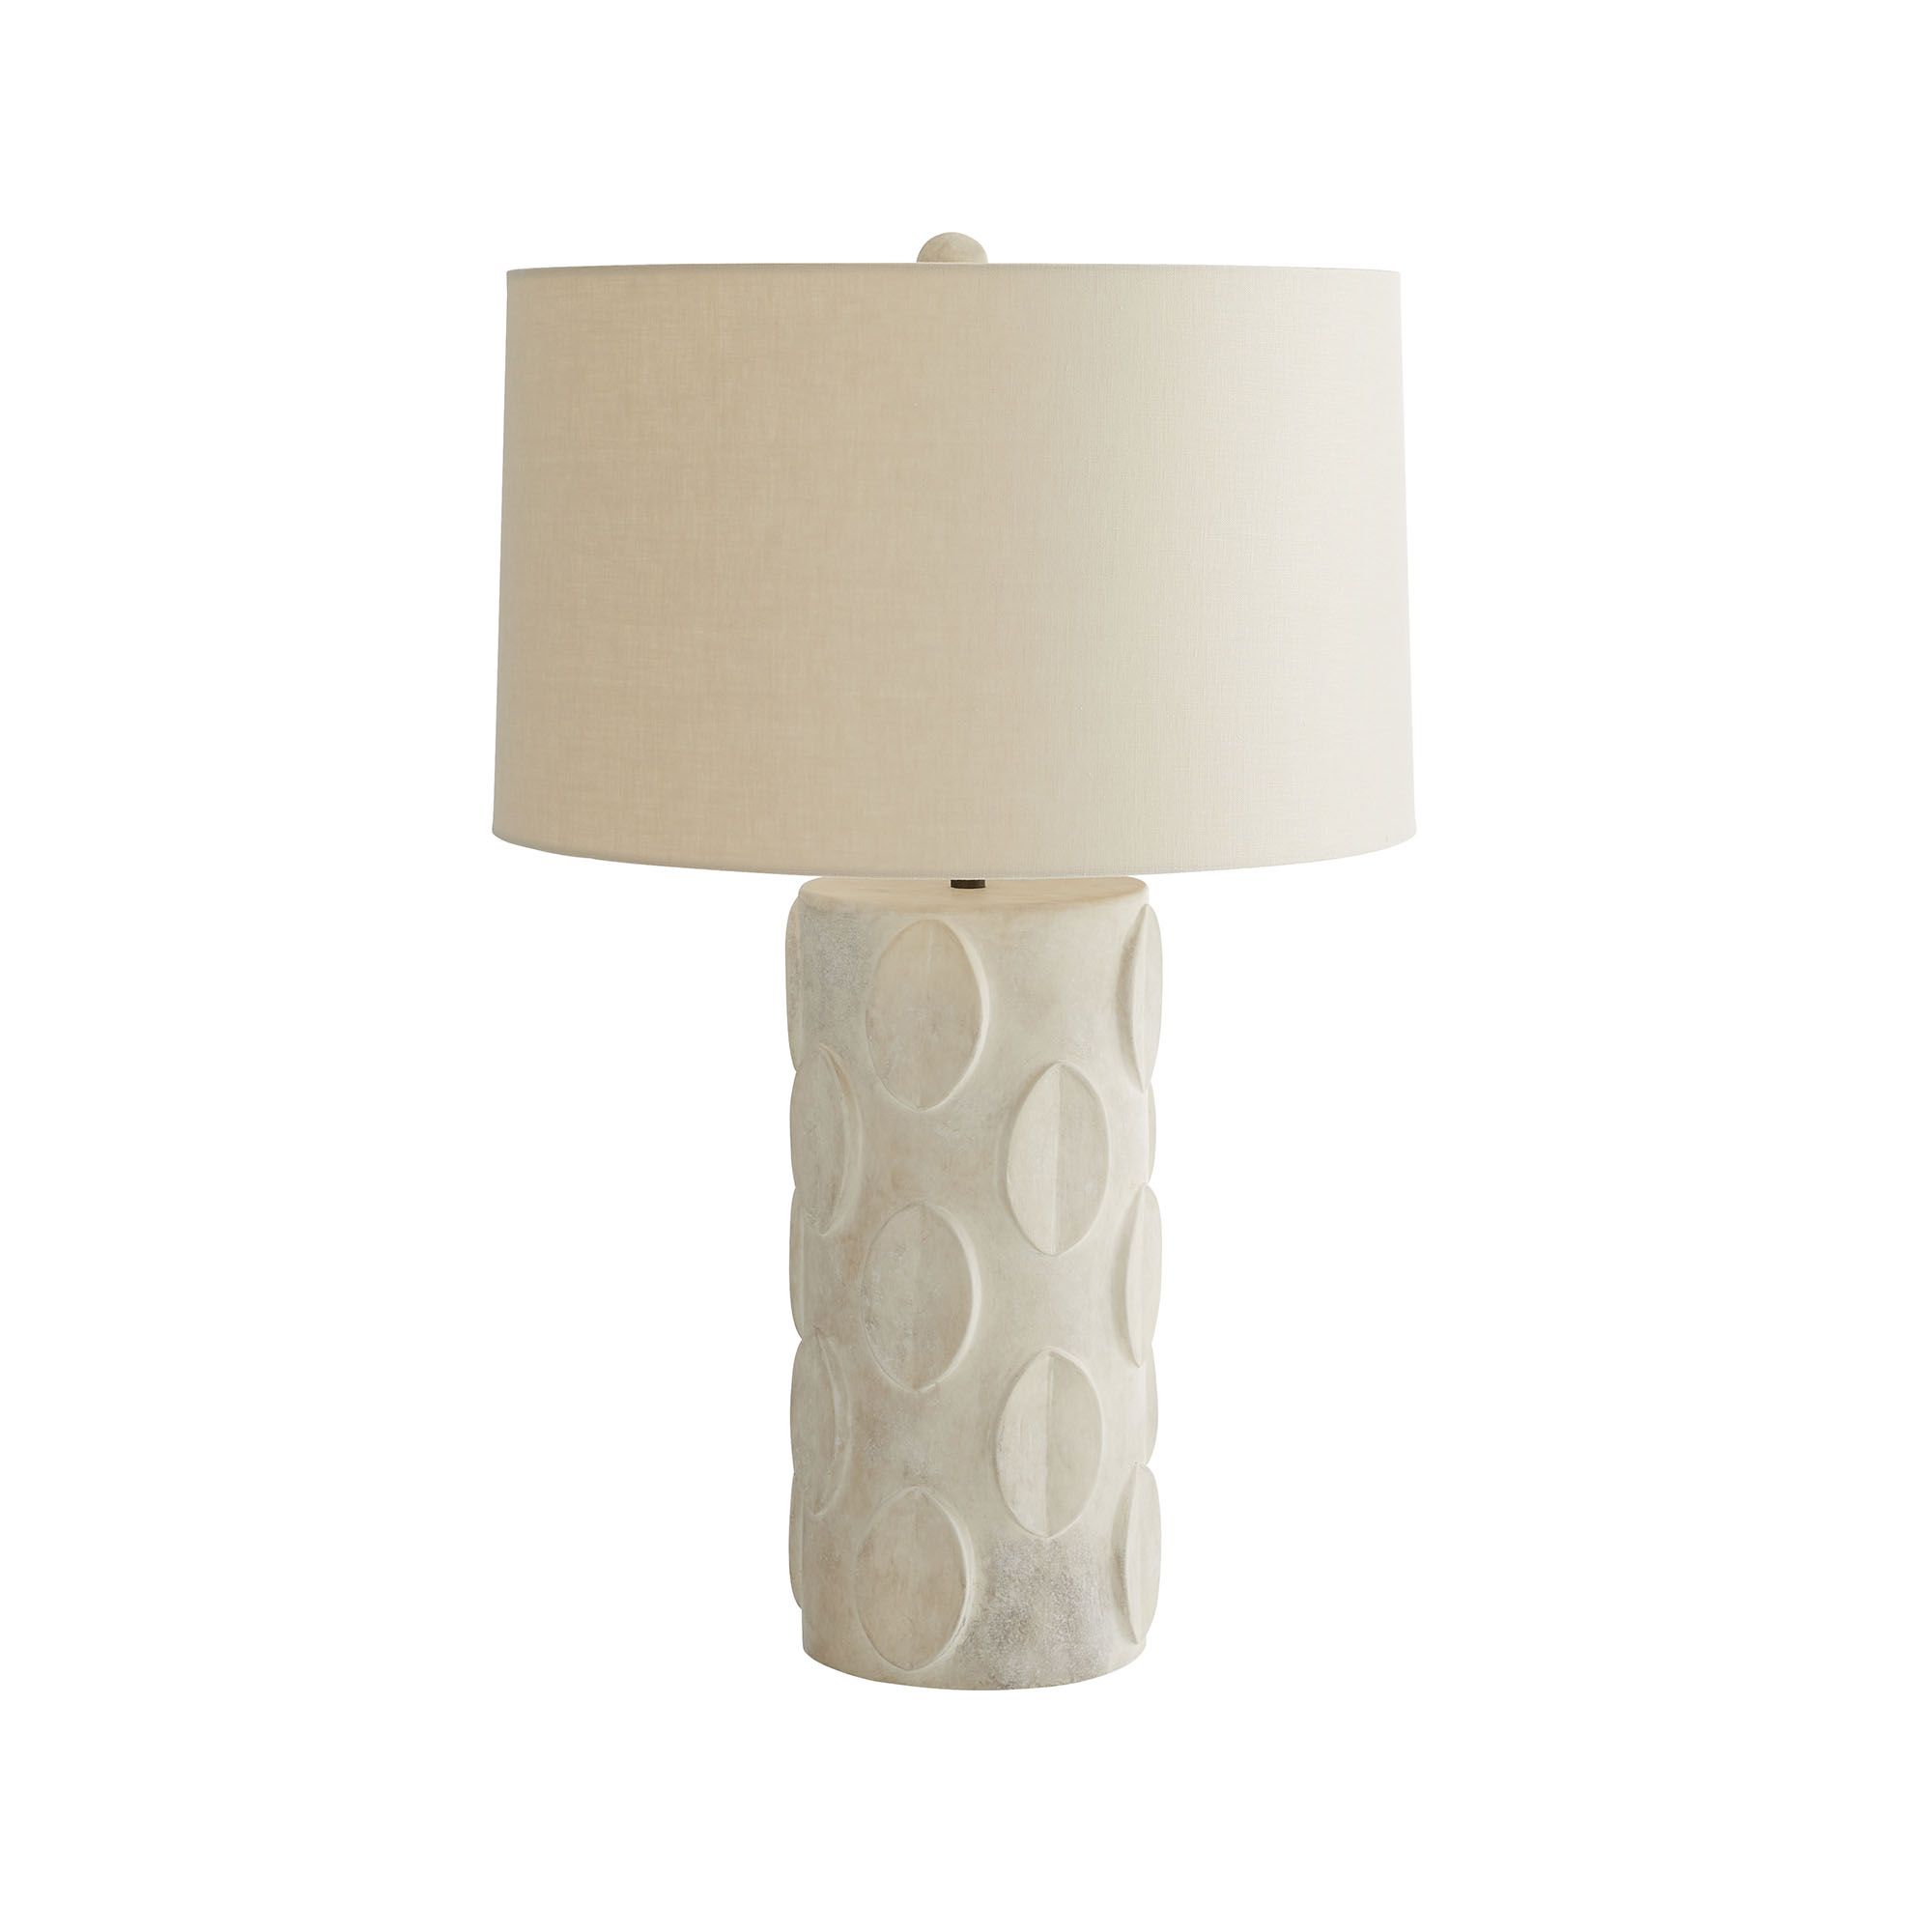 Купить Настольная лампа Jardanna Lamp в интернет-магазине roooms.ru